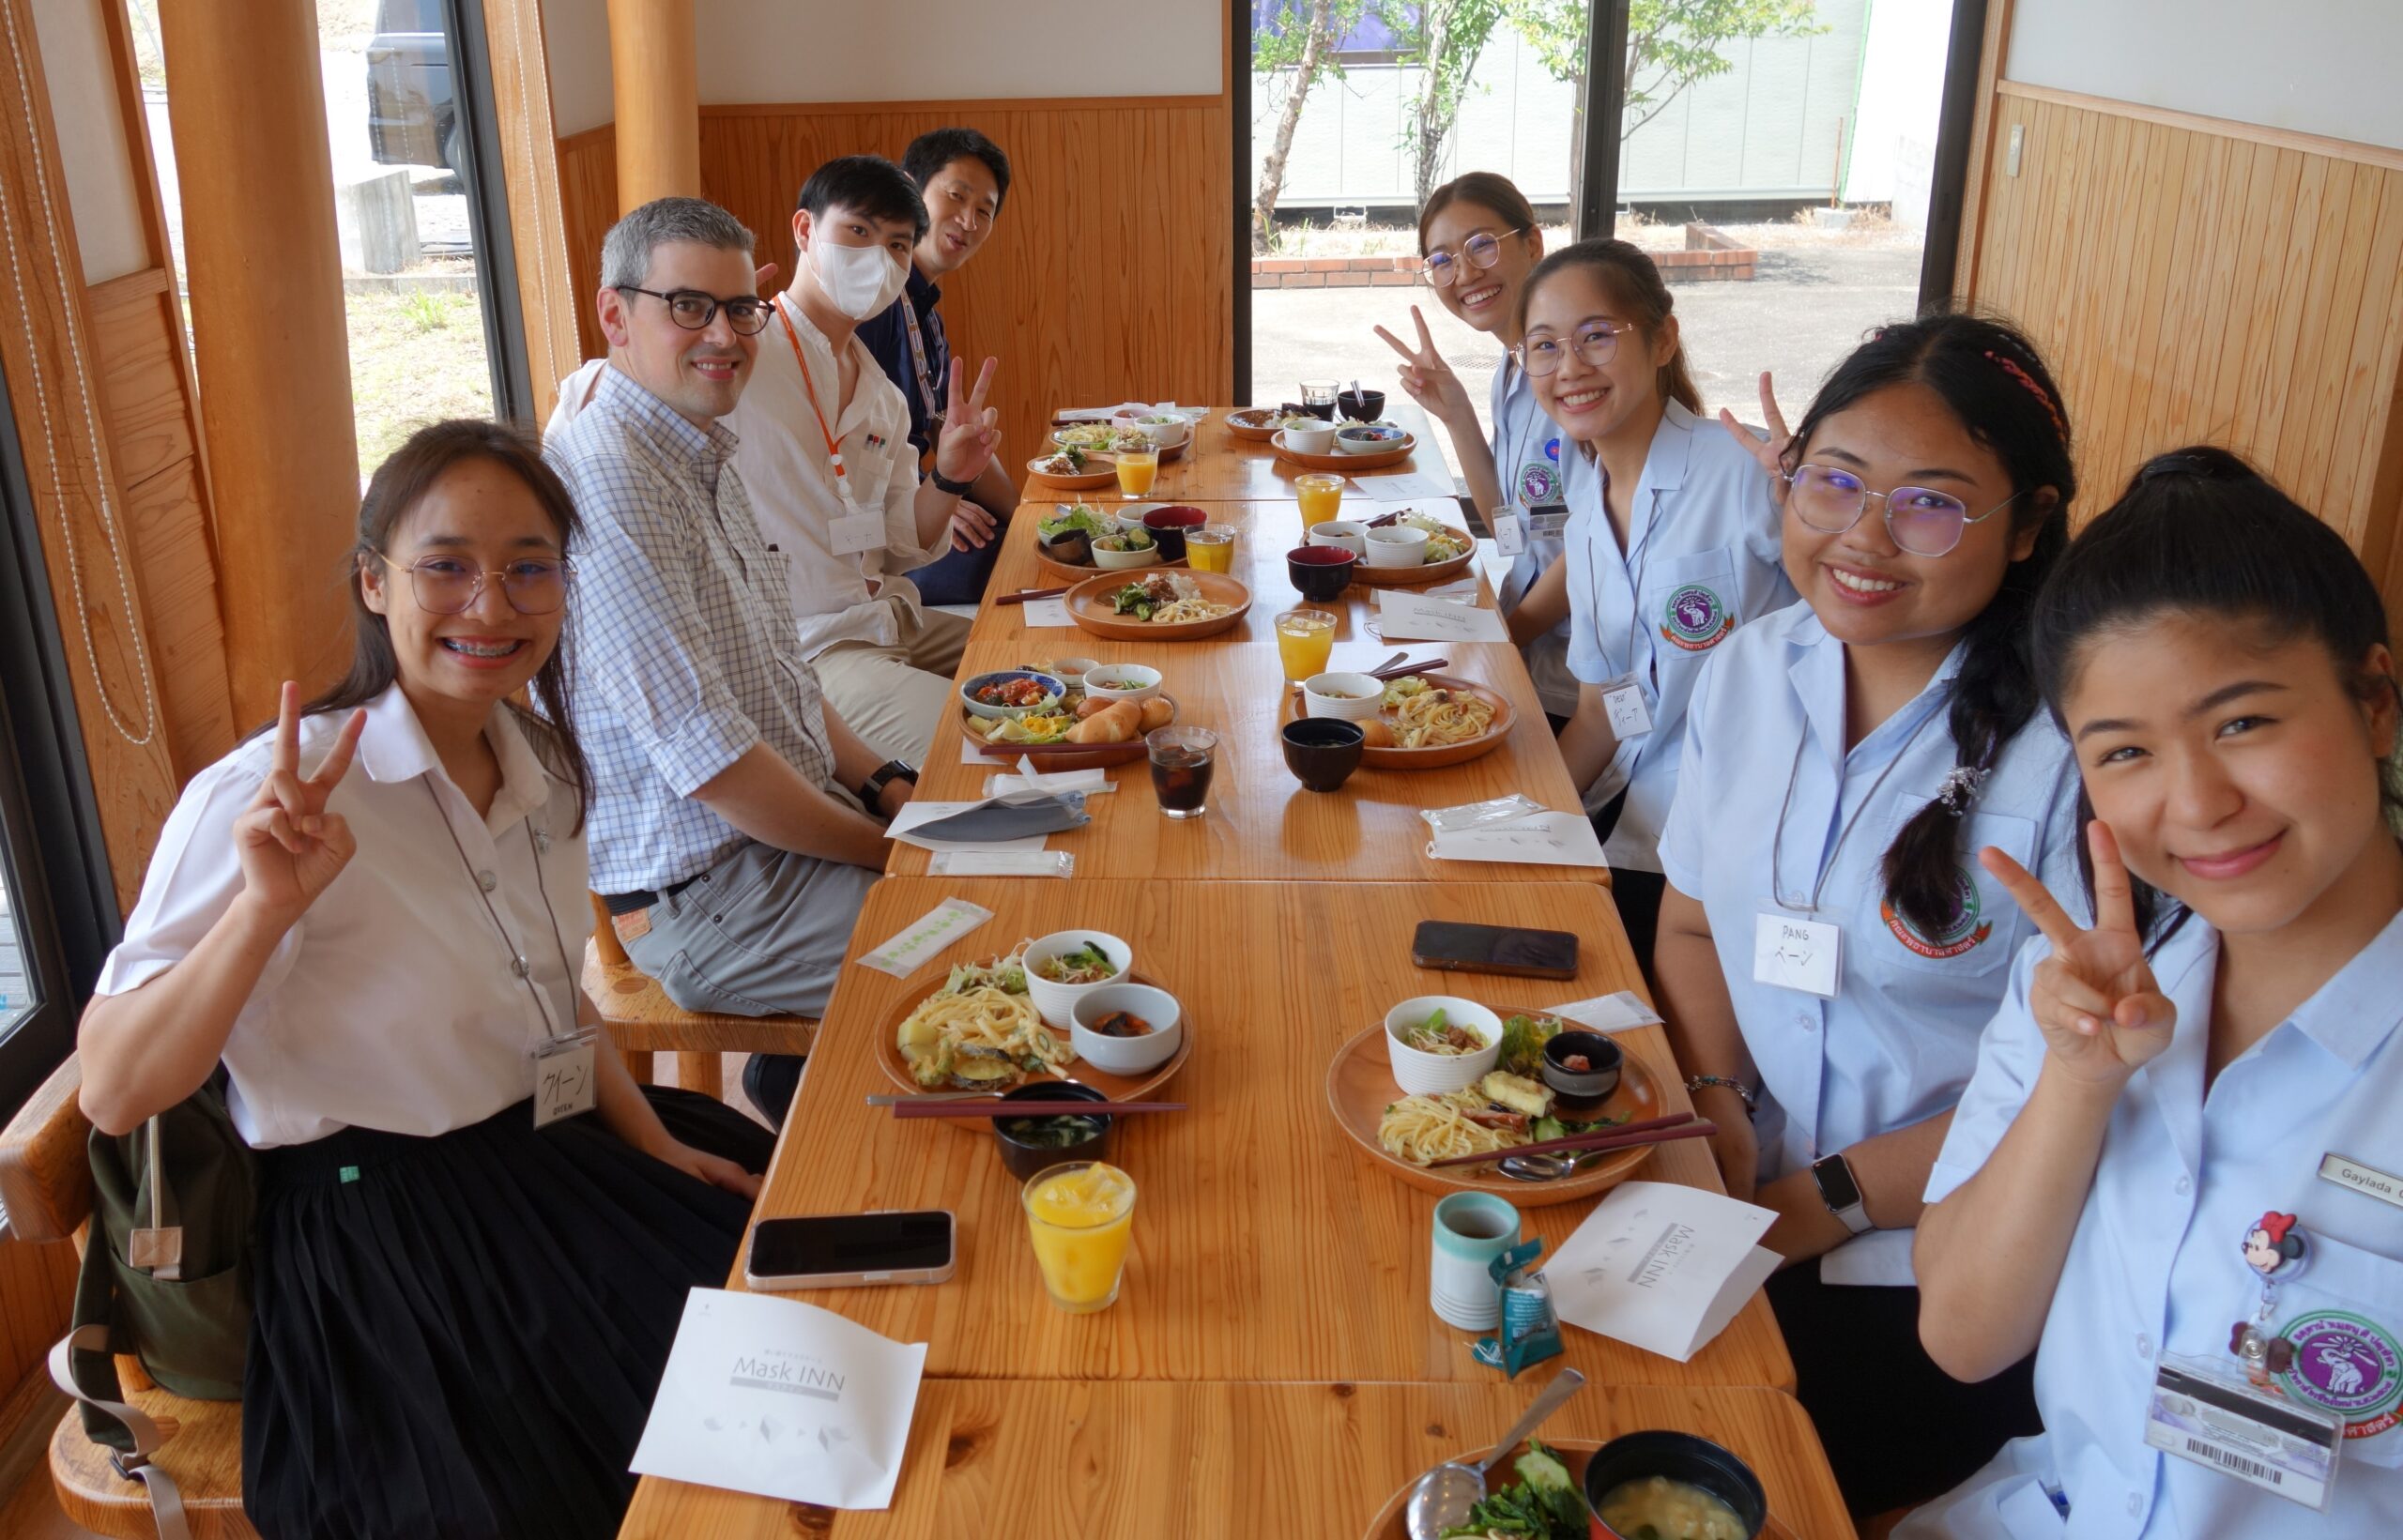 Lunch at Buffet Restaurant Juju, an employment transition support service